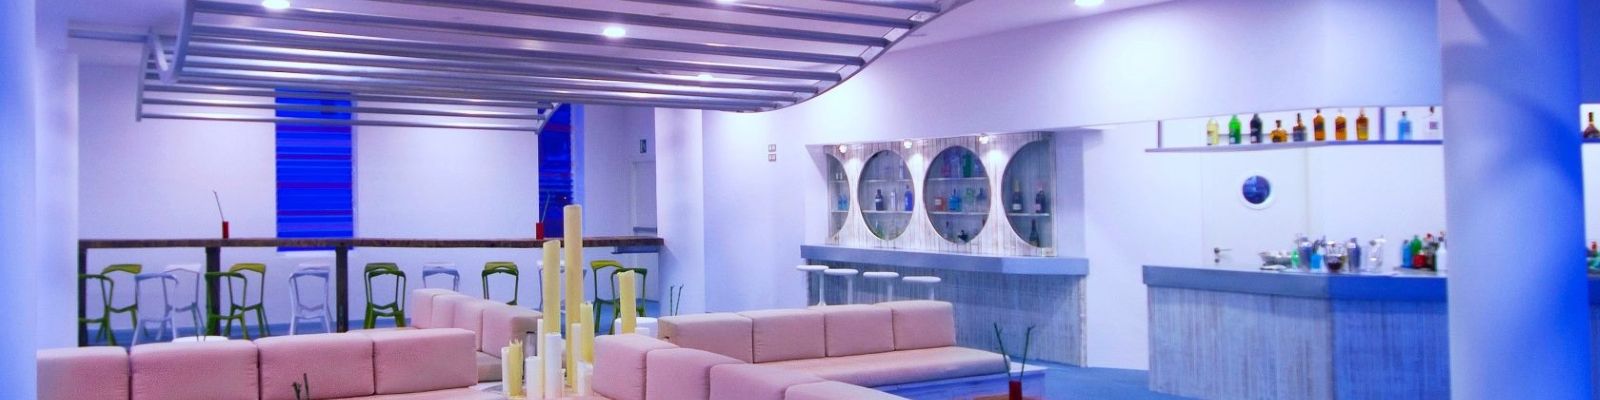 Oferta hotel Higuerón para tu escapada de lujo en la Costa del Sol